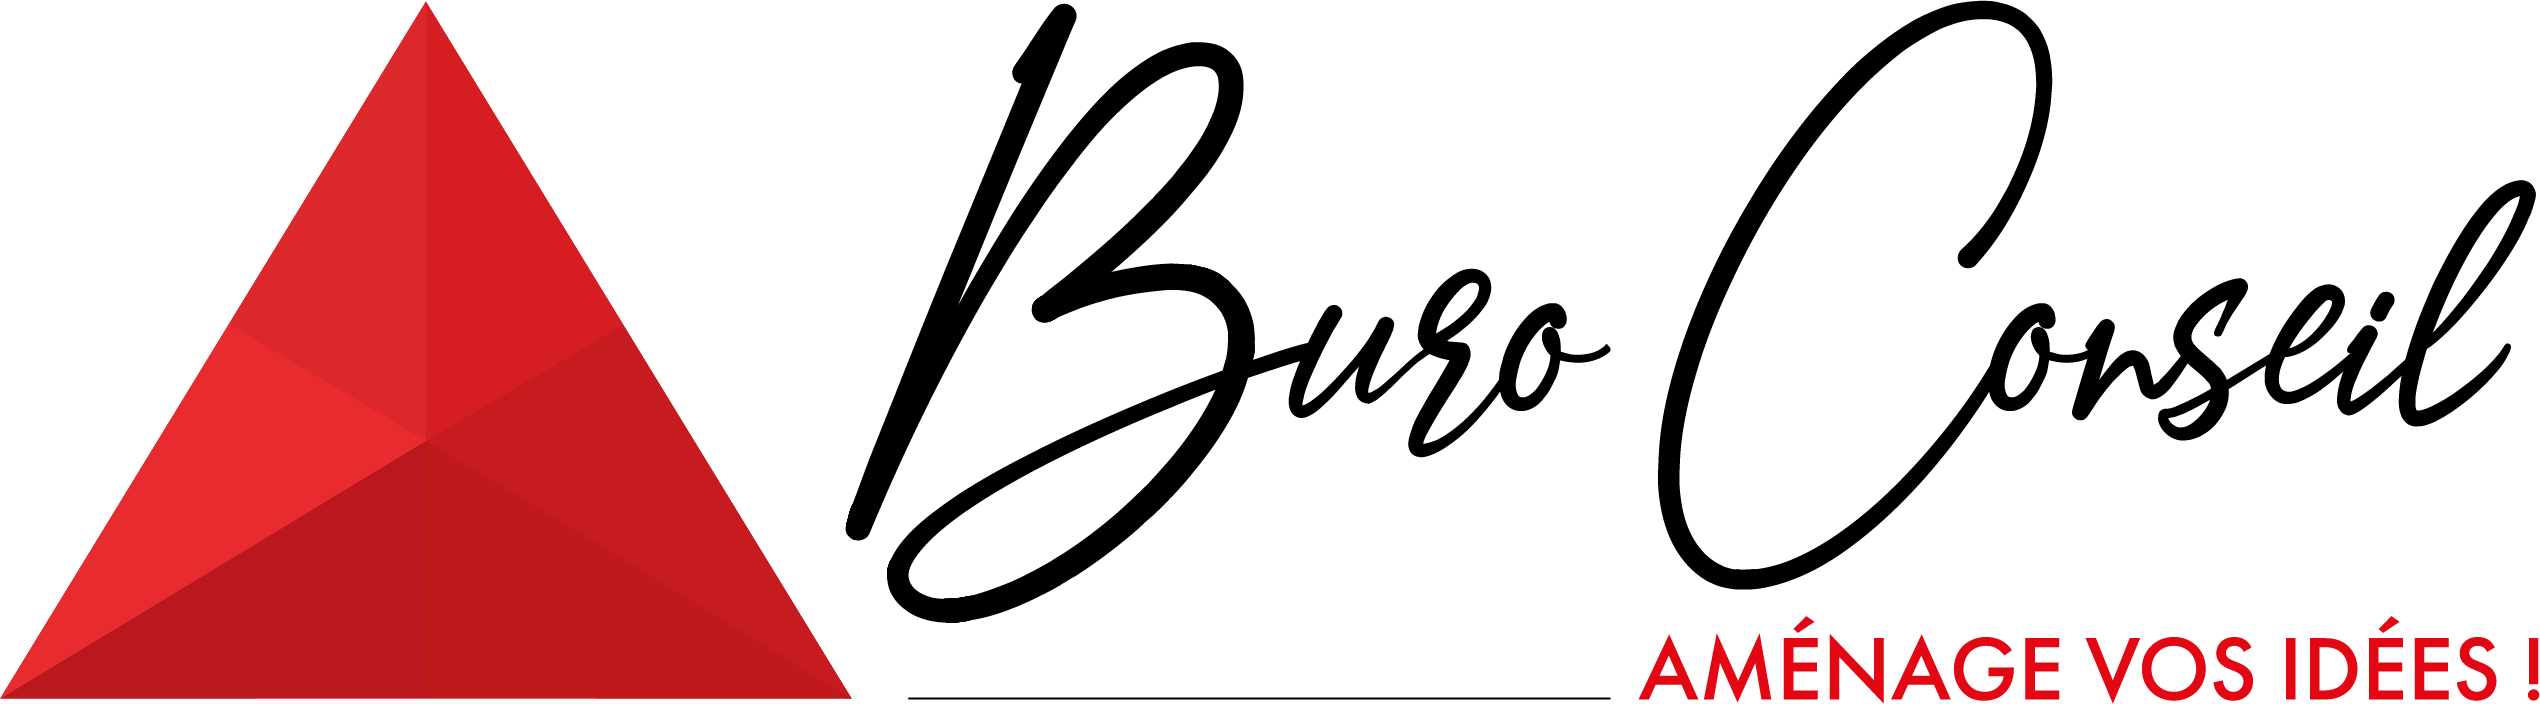 Buro Conseil / SAS LAB